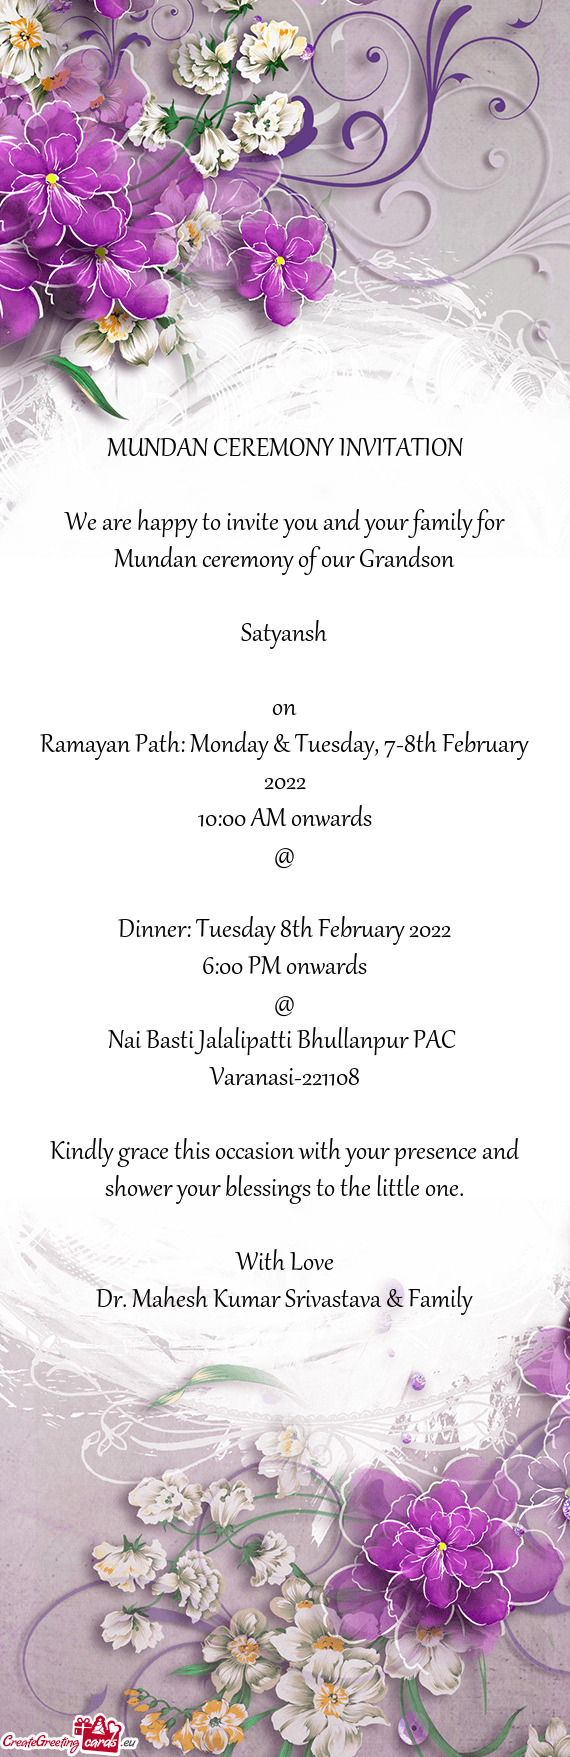 Ramayan Path: Monday & Tuesday, 7-8th February 2022